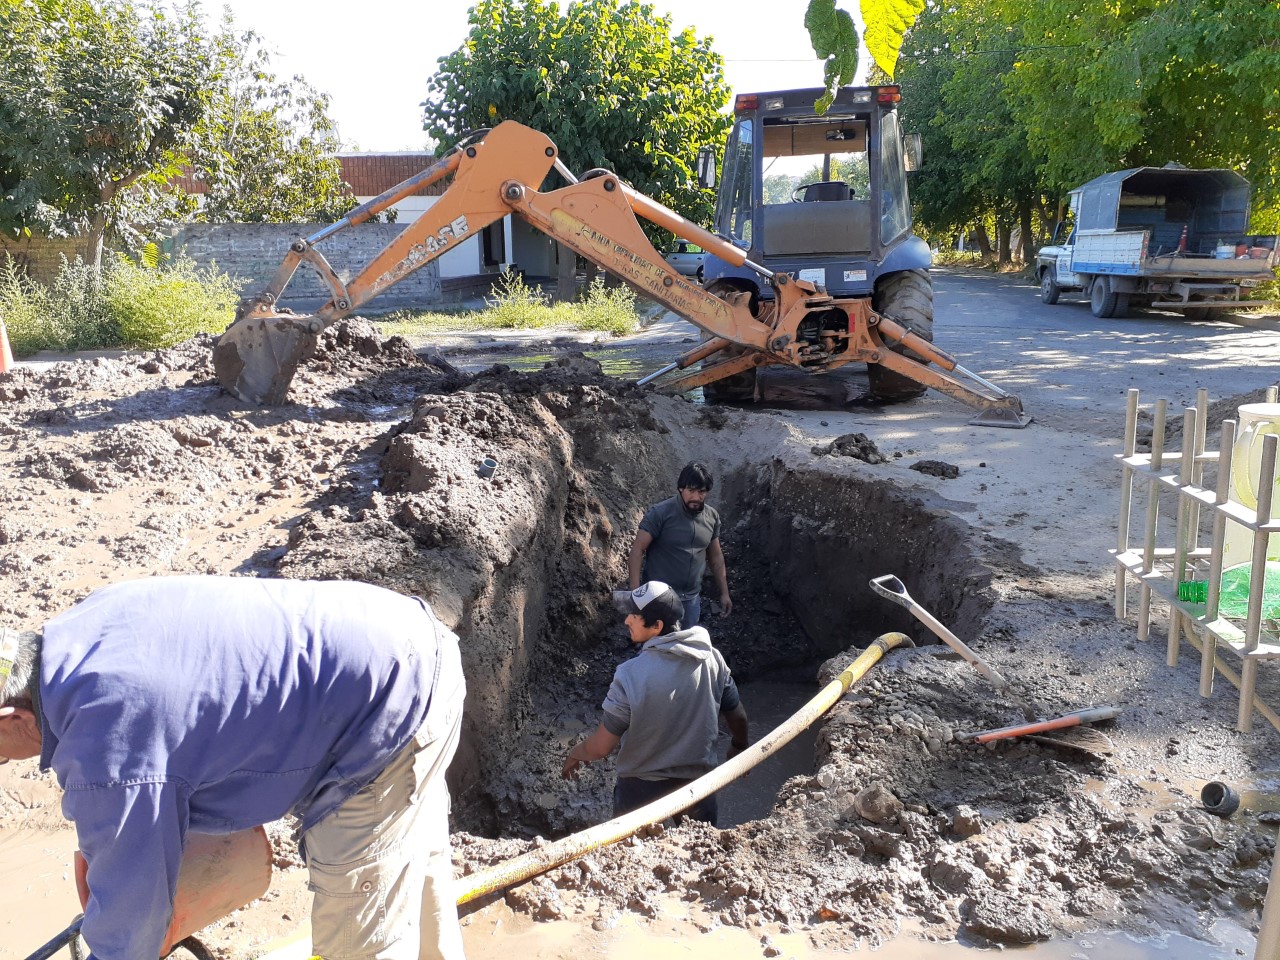 Obras Públicas del municipio reginense trabaja en la reparación de un caño de la red de agua. (Foto Pablo Accinelli)